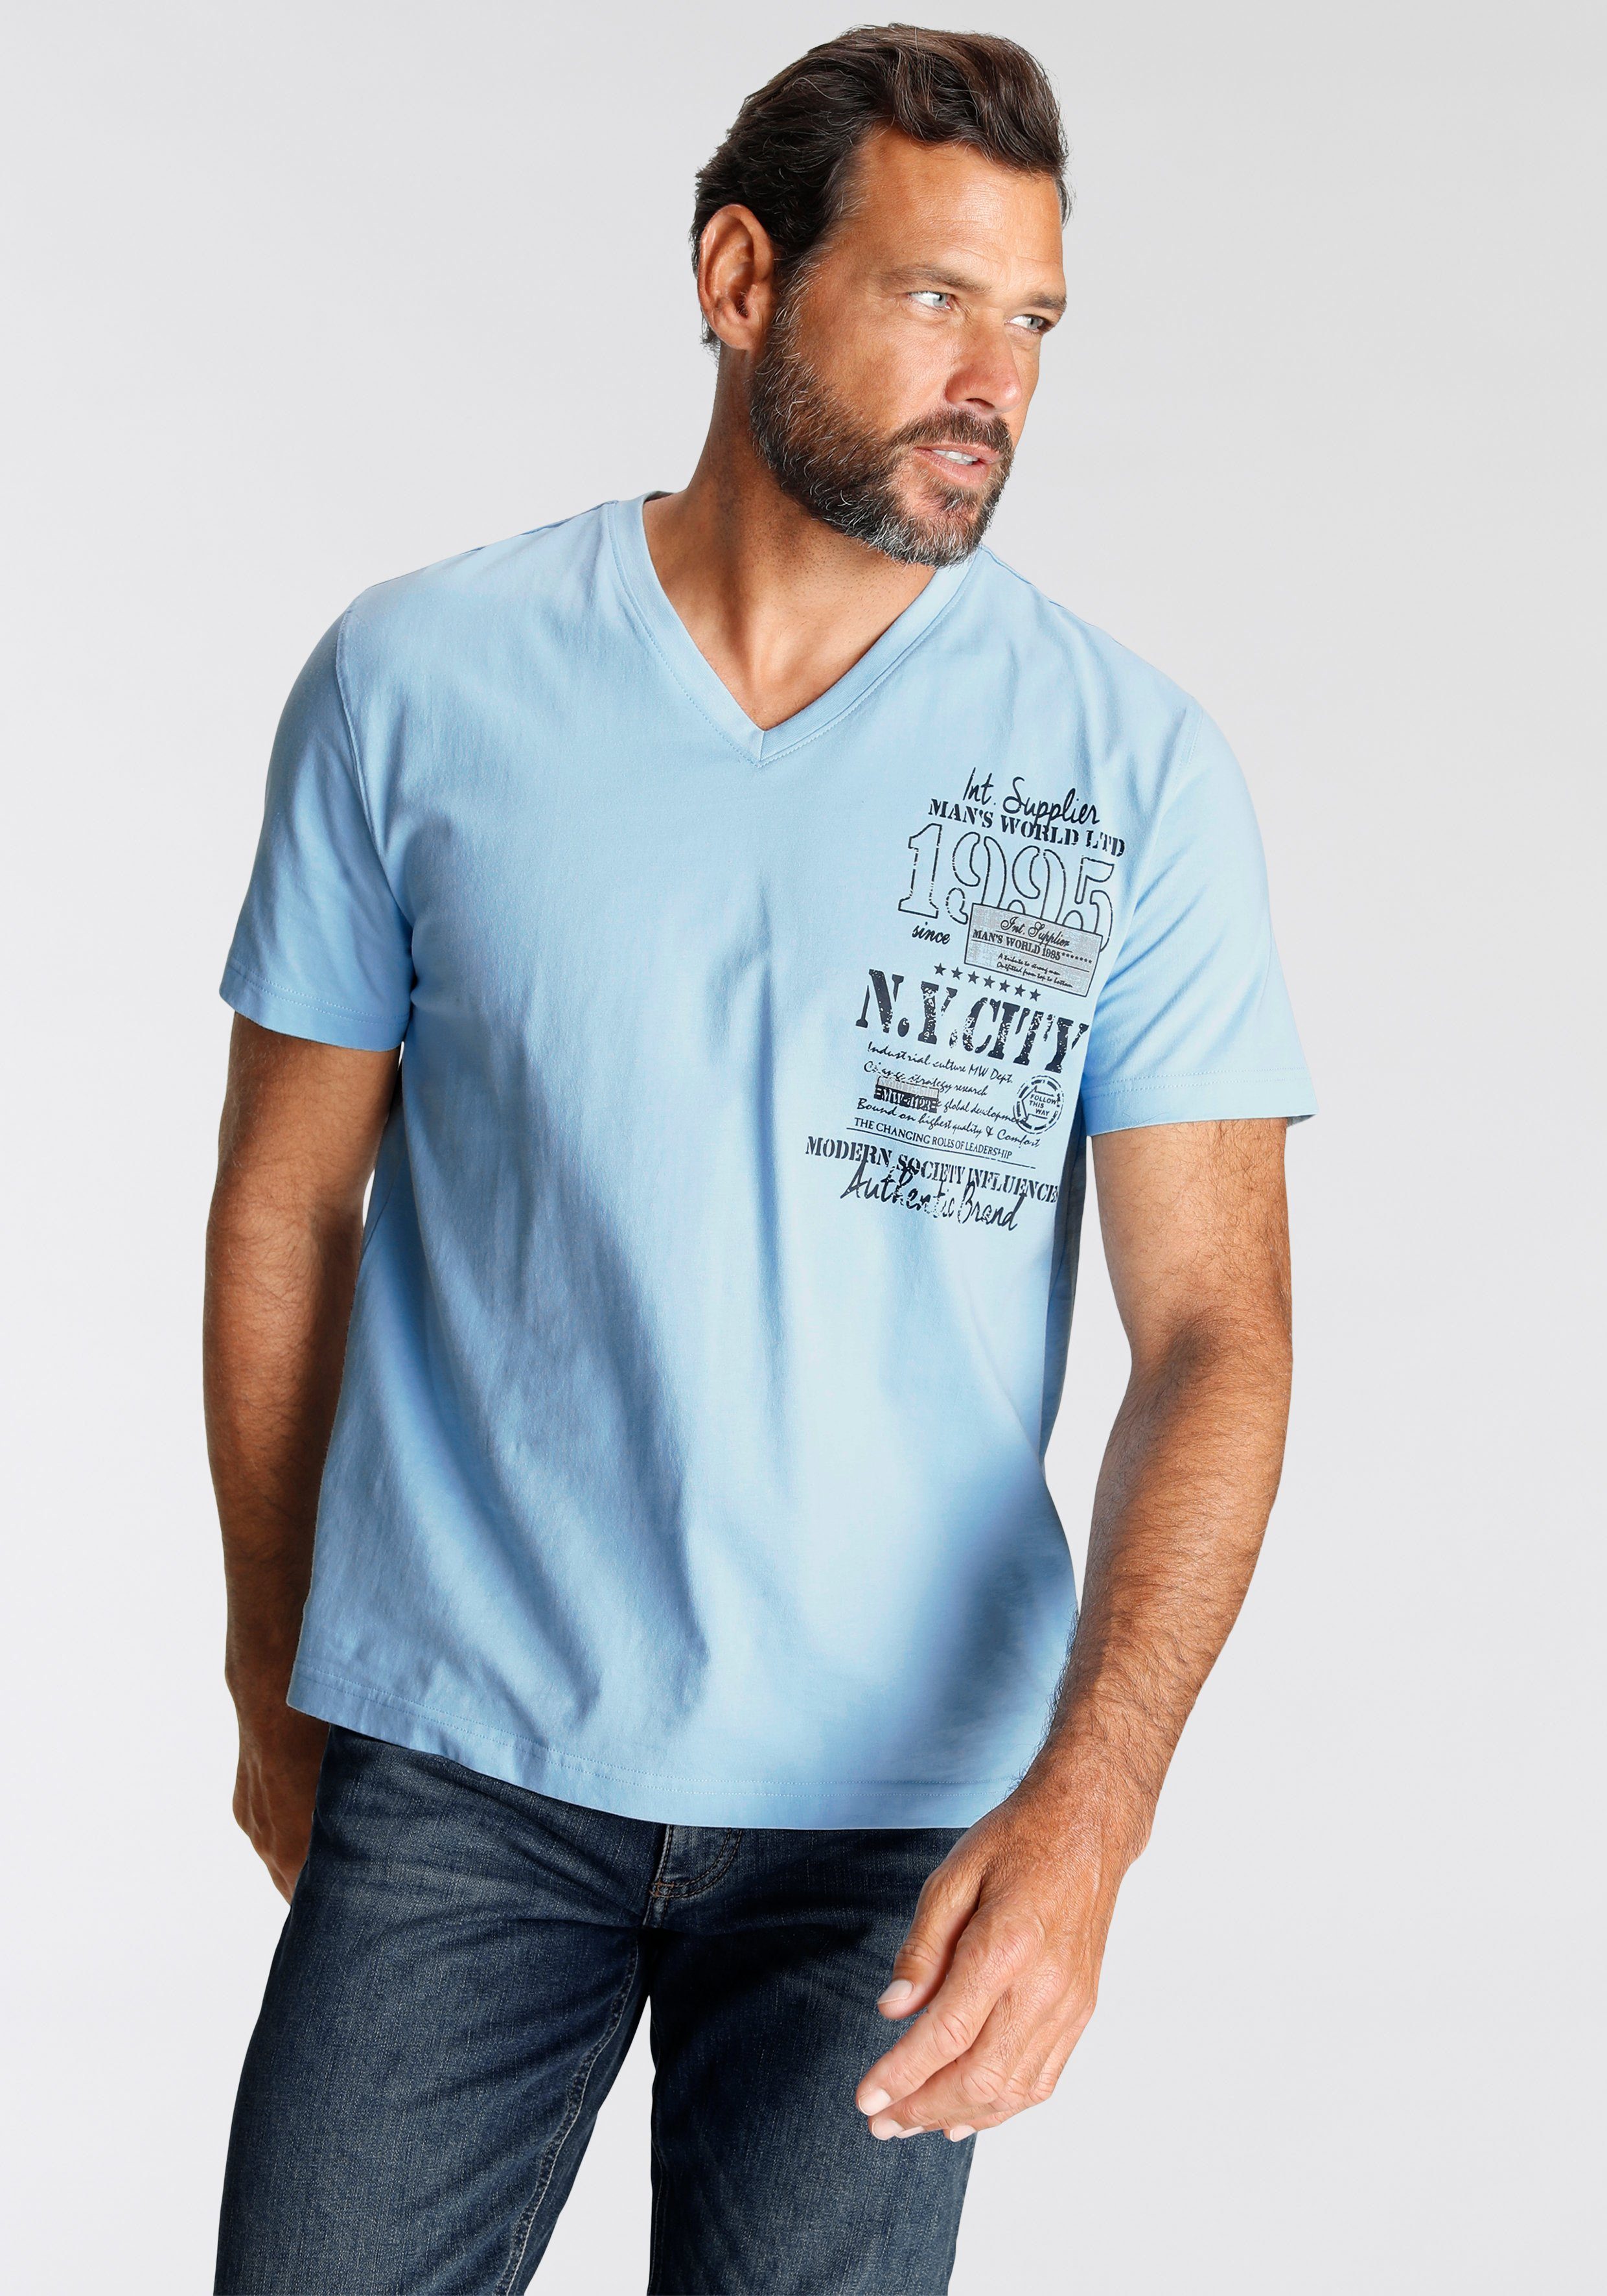 Man's World mit Print modischem T-Shirt